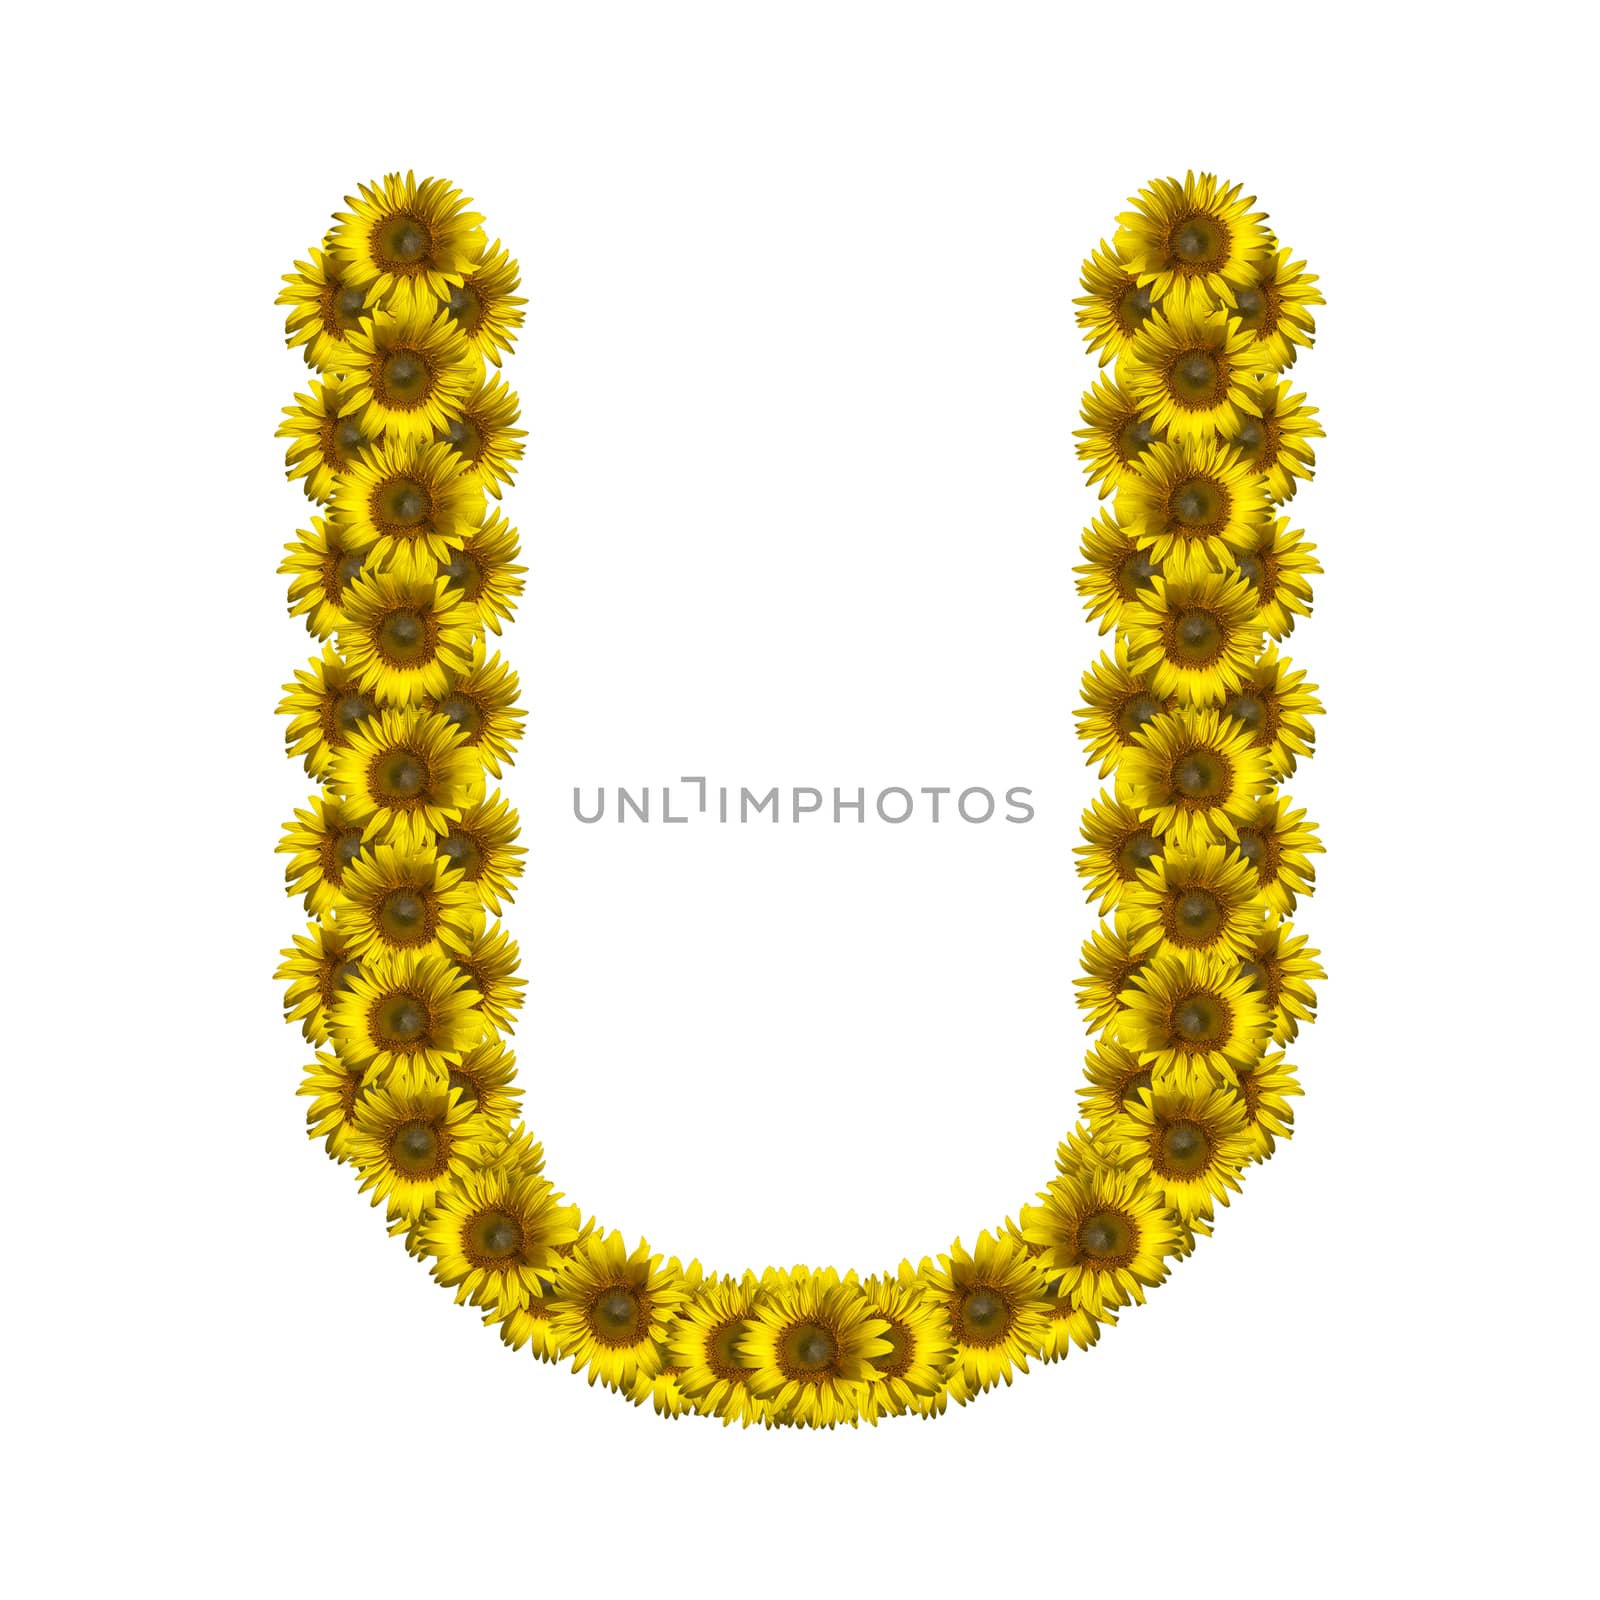 Sunflower alphabet isolated on white background, letter U